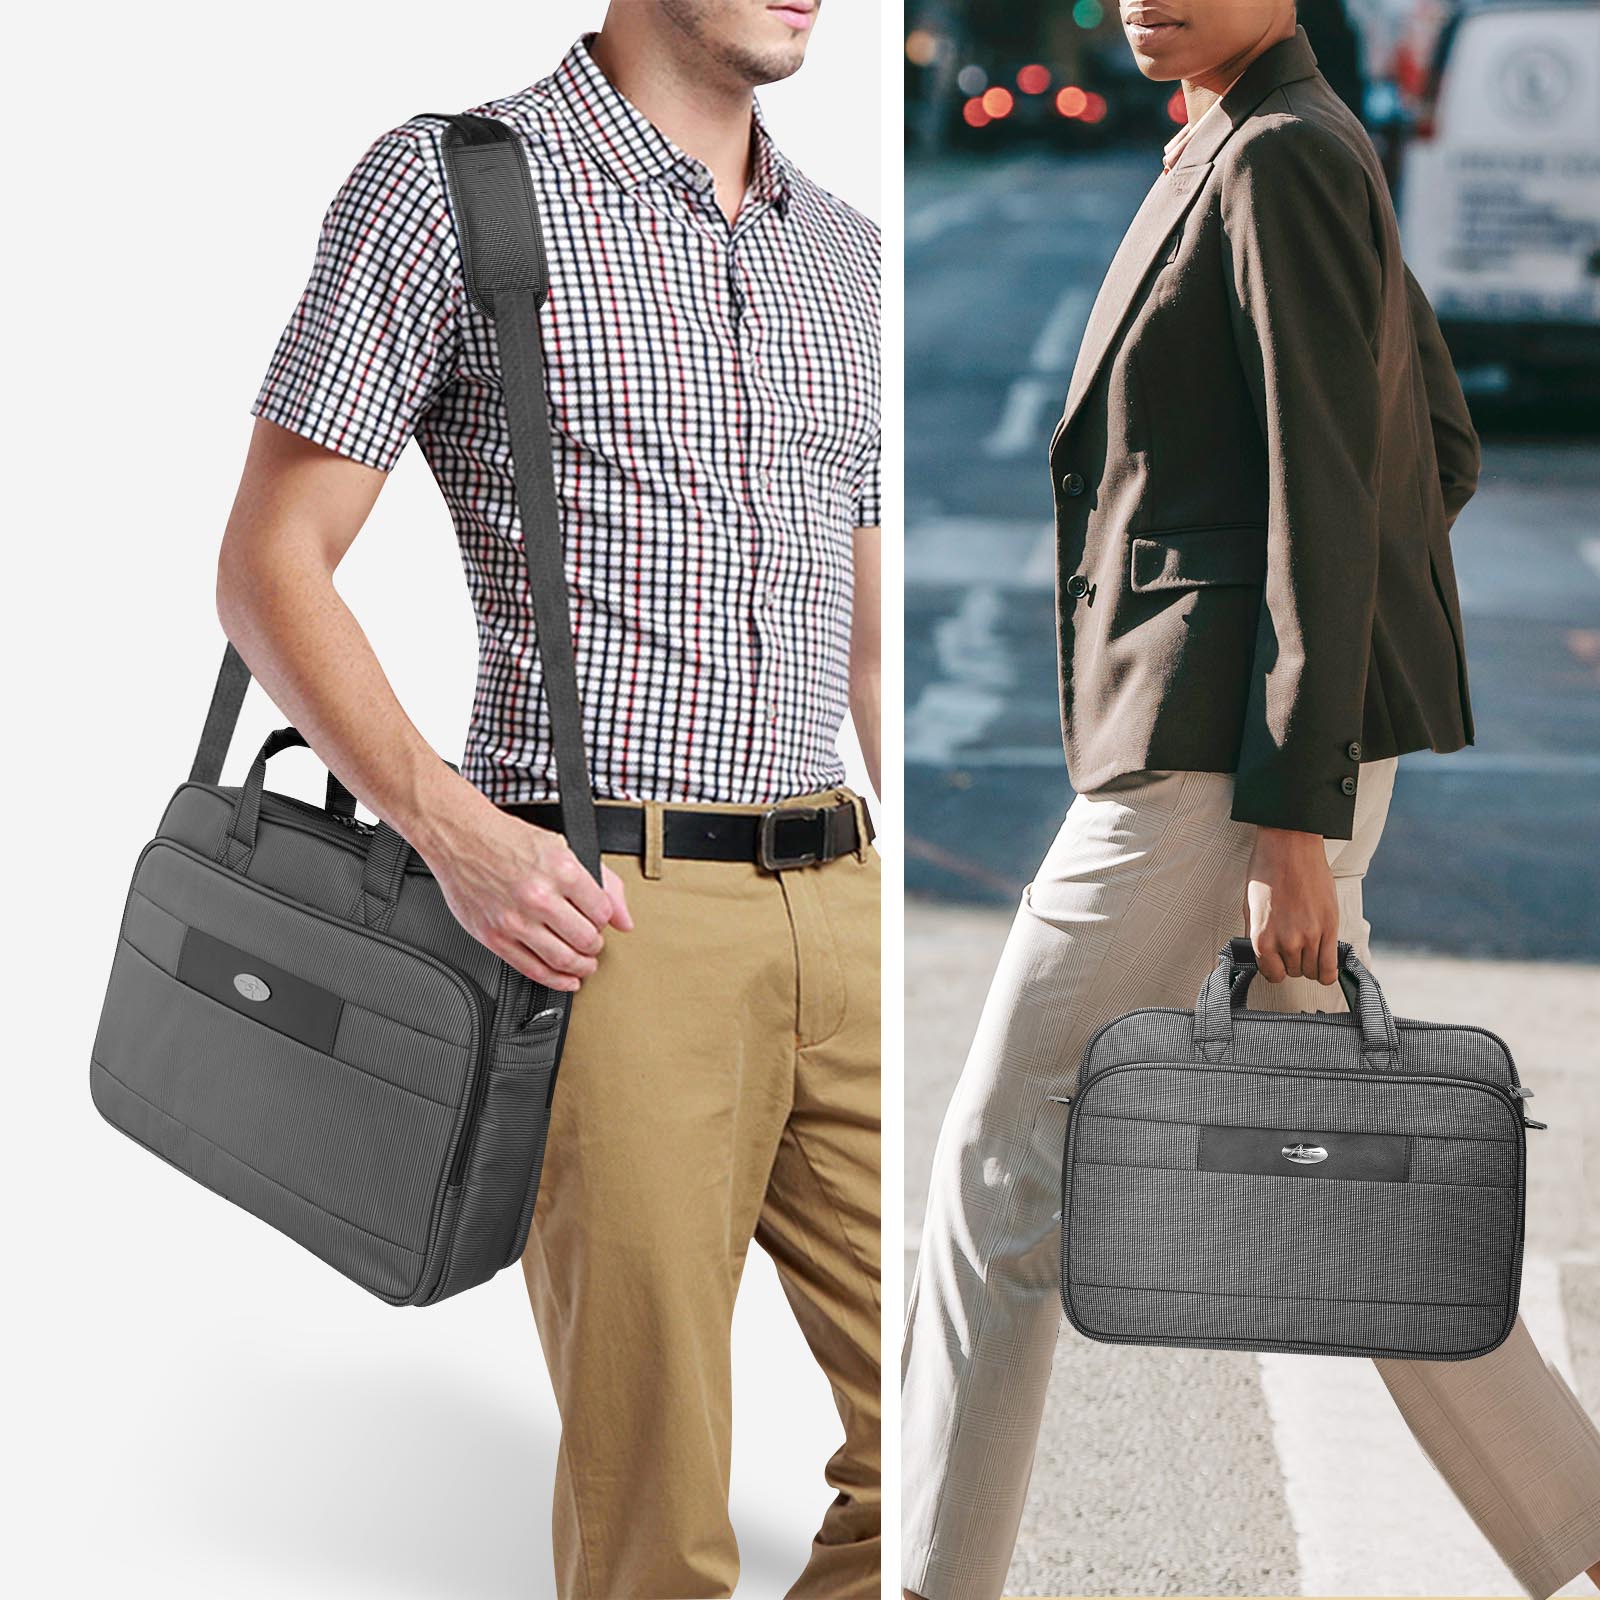 Sacoche / Sac pochette pour PC ordinateur portable 15.6 pouces gris -  Malette de voyage/affaires Notebook 15,6 avec compartiment poches de  rangement et poignée grise - Laptop Bag XEPTIO - Xeptio